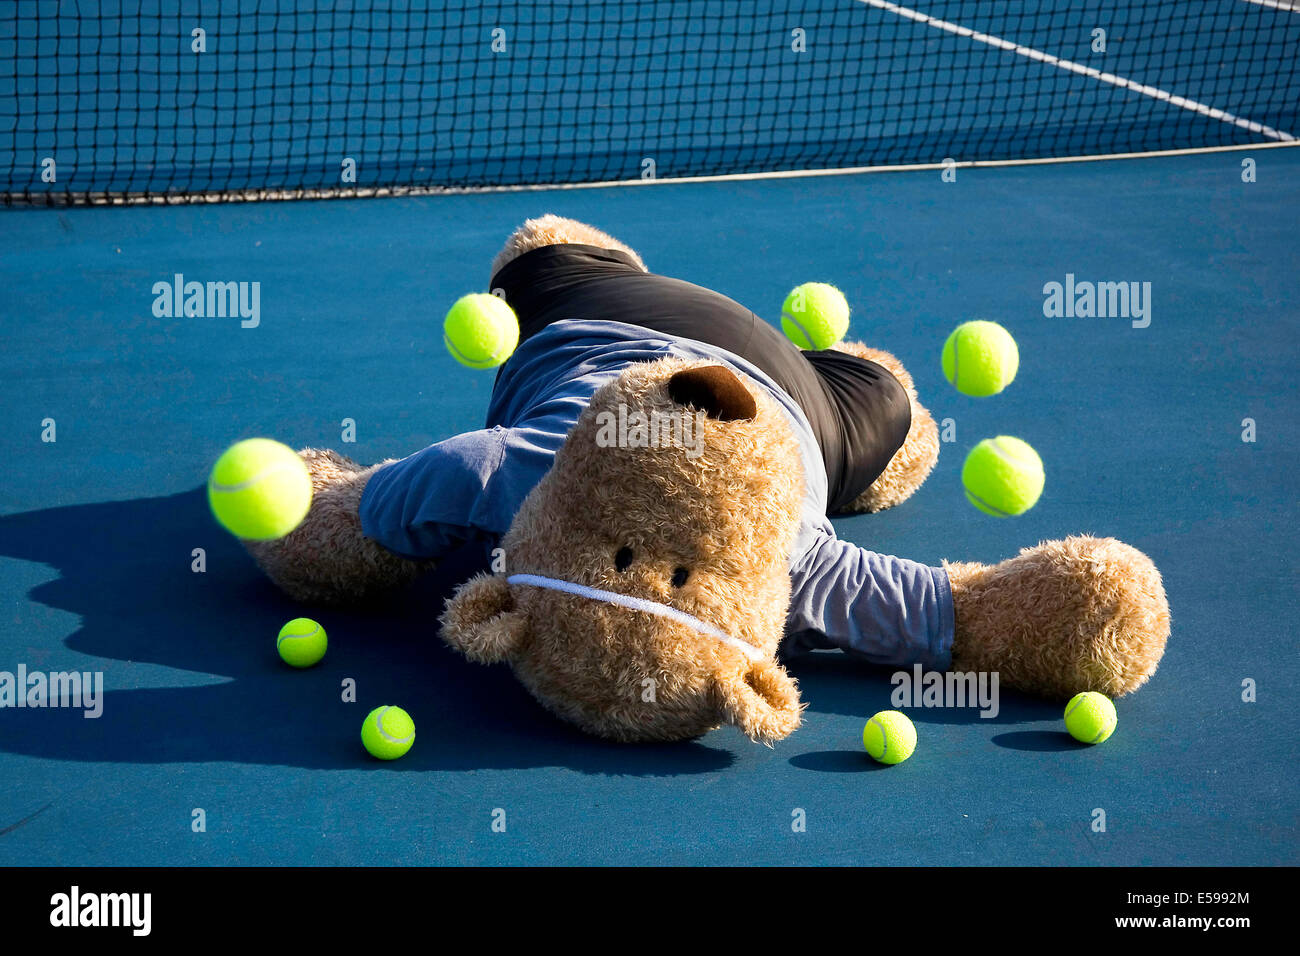 Funny tennis player immagini e fotografie stock ad alta risoluzione - Alamy